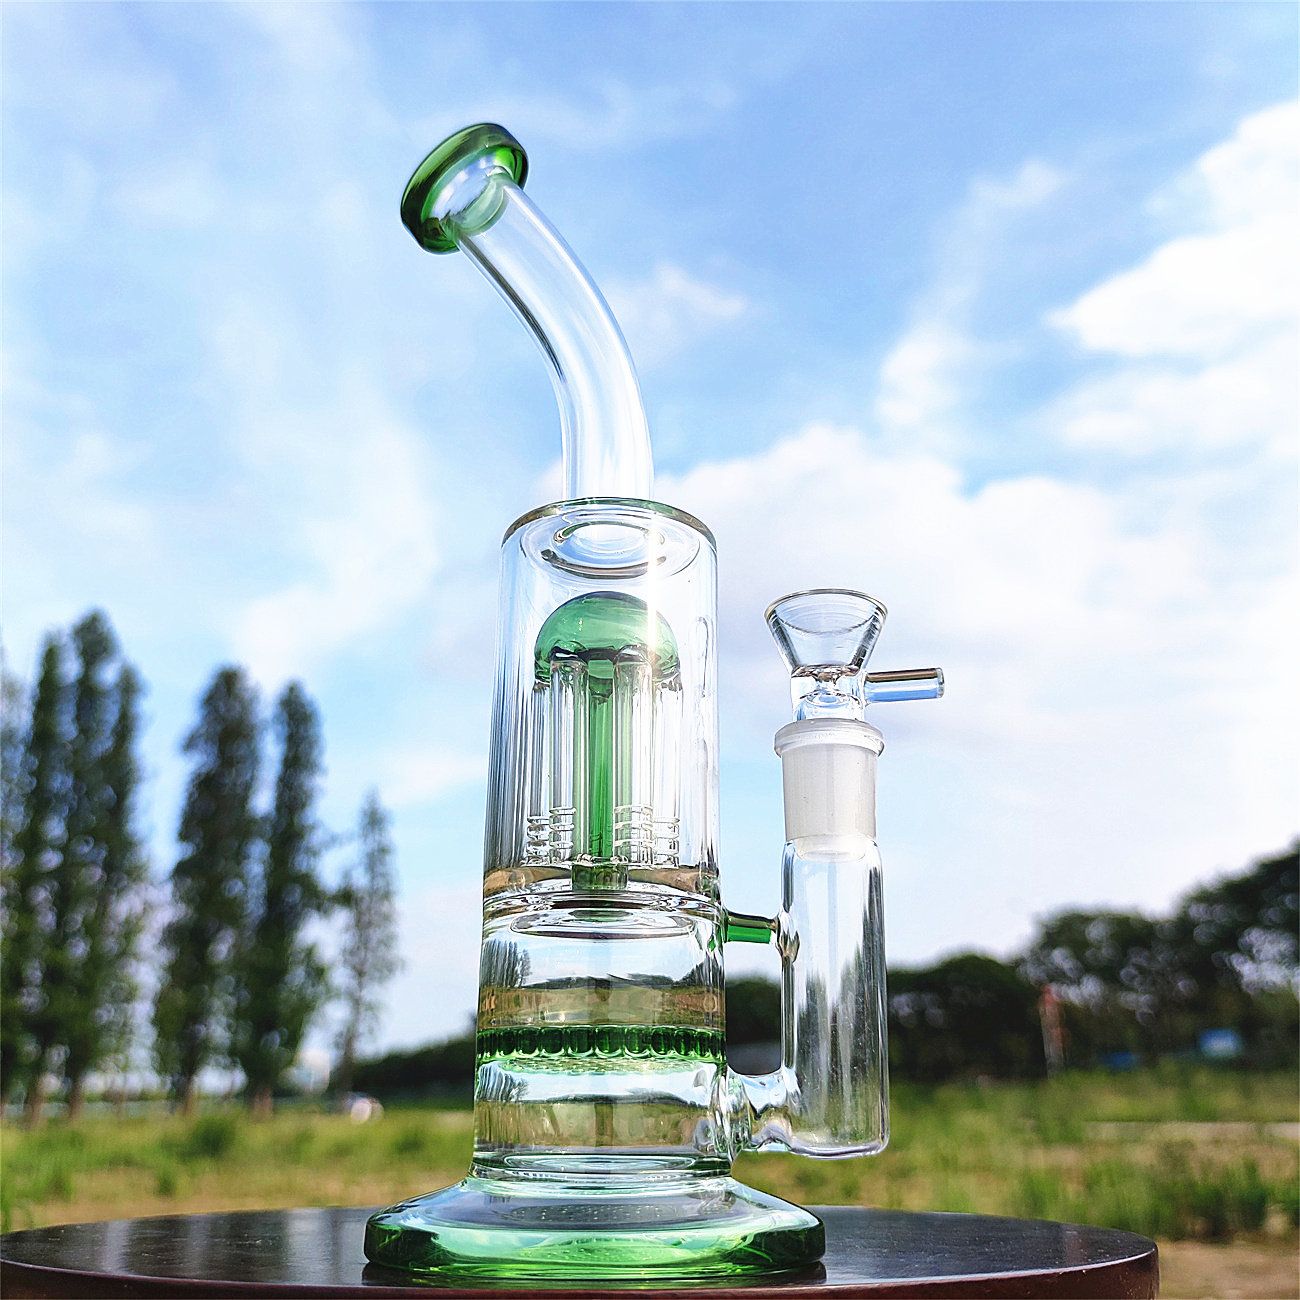 11 "Green Glass Water Pipe de banggh gamiah pipes bongs tabacs fumer bulles de fumée de fumée de bongs